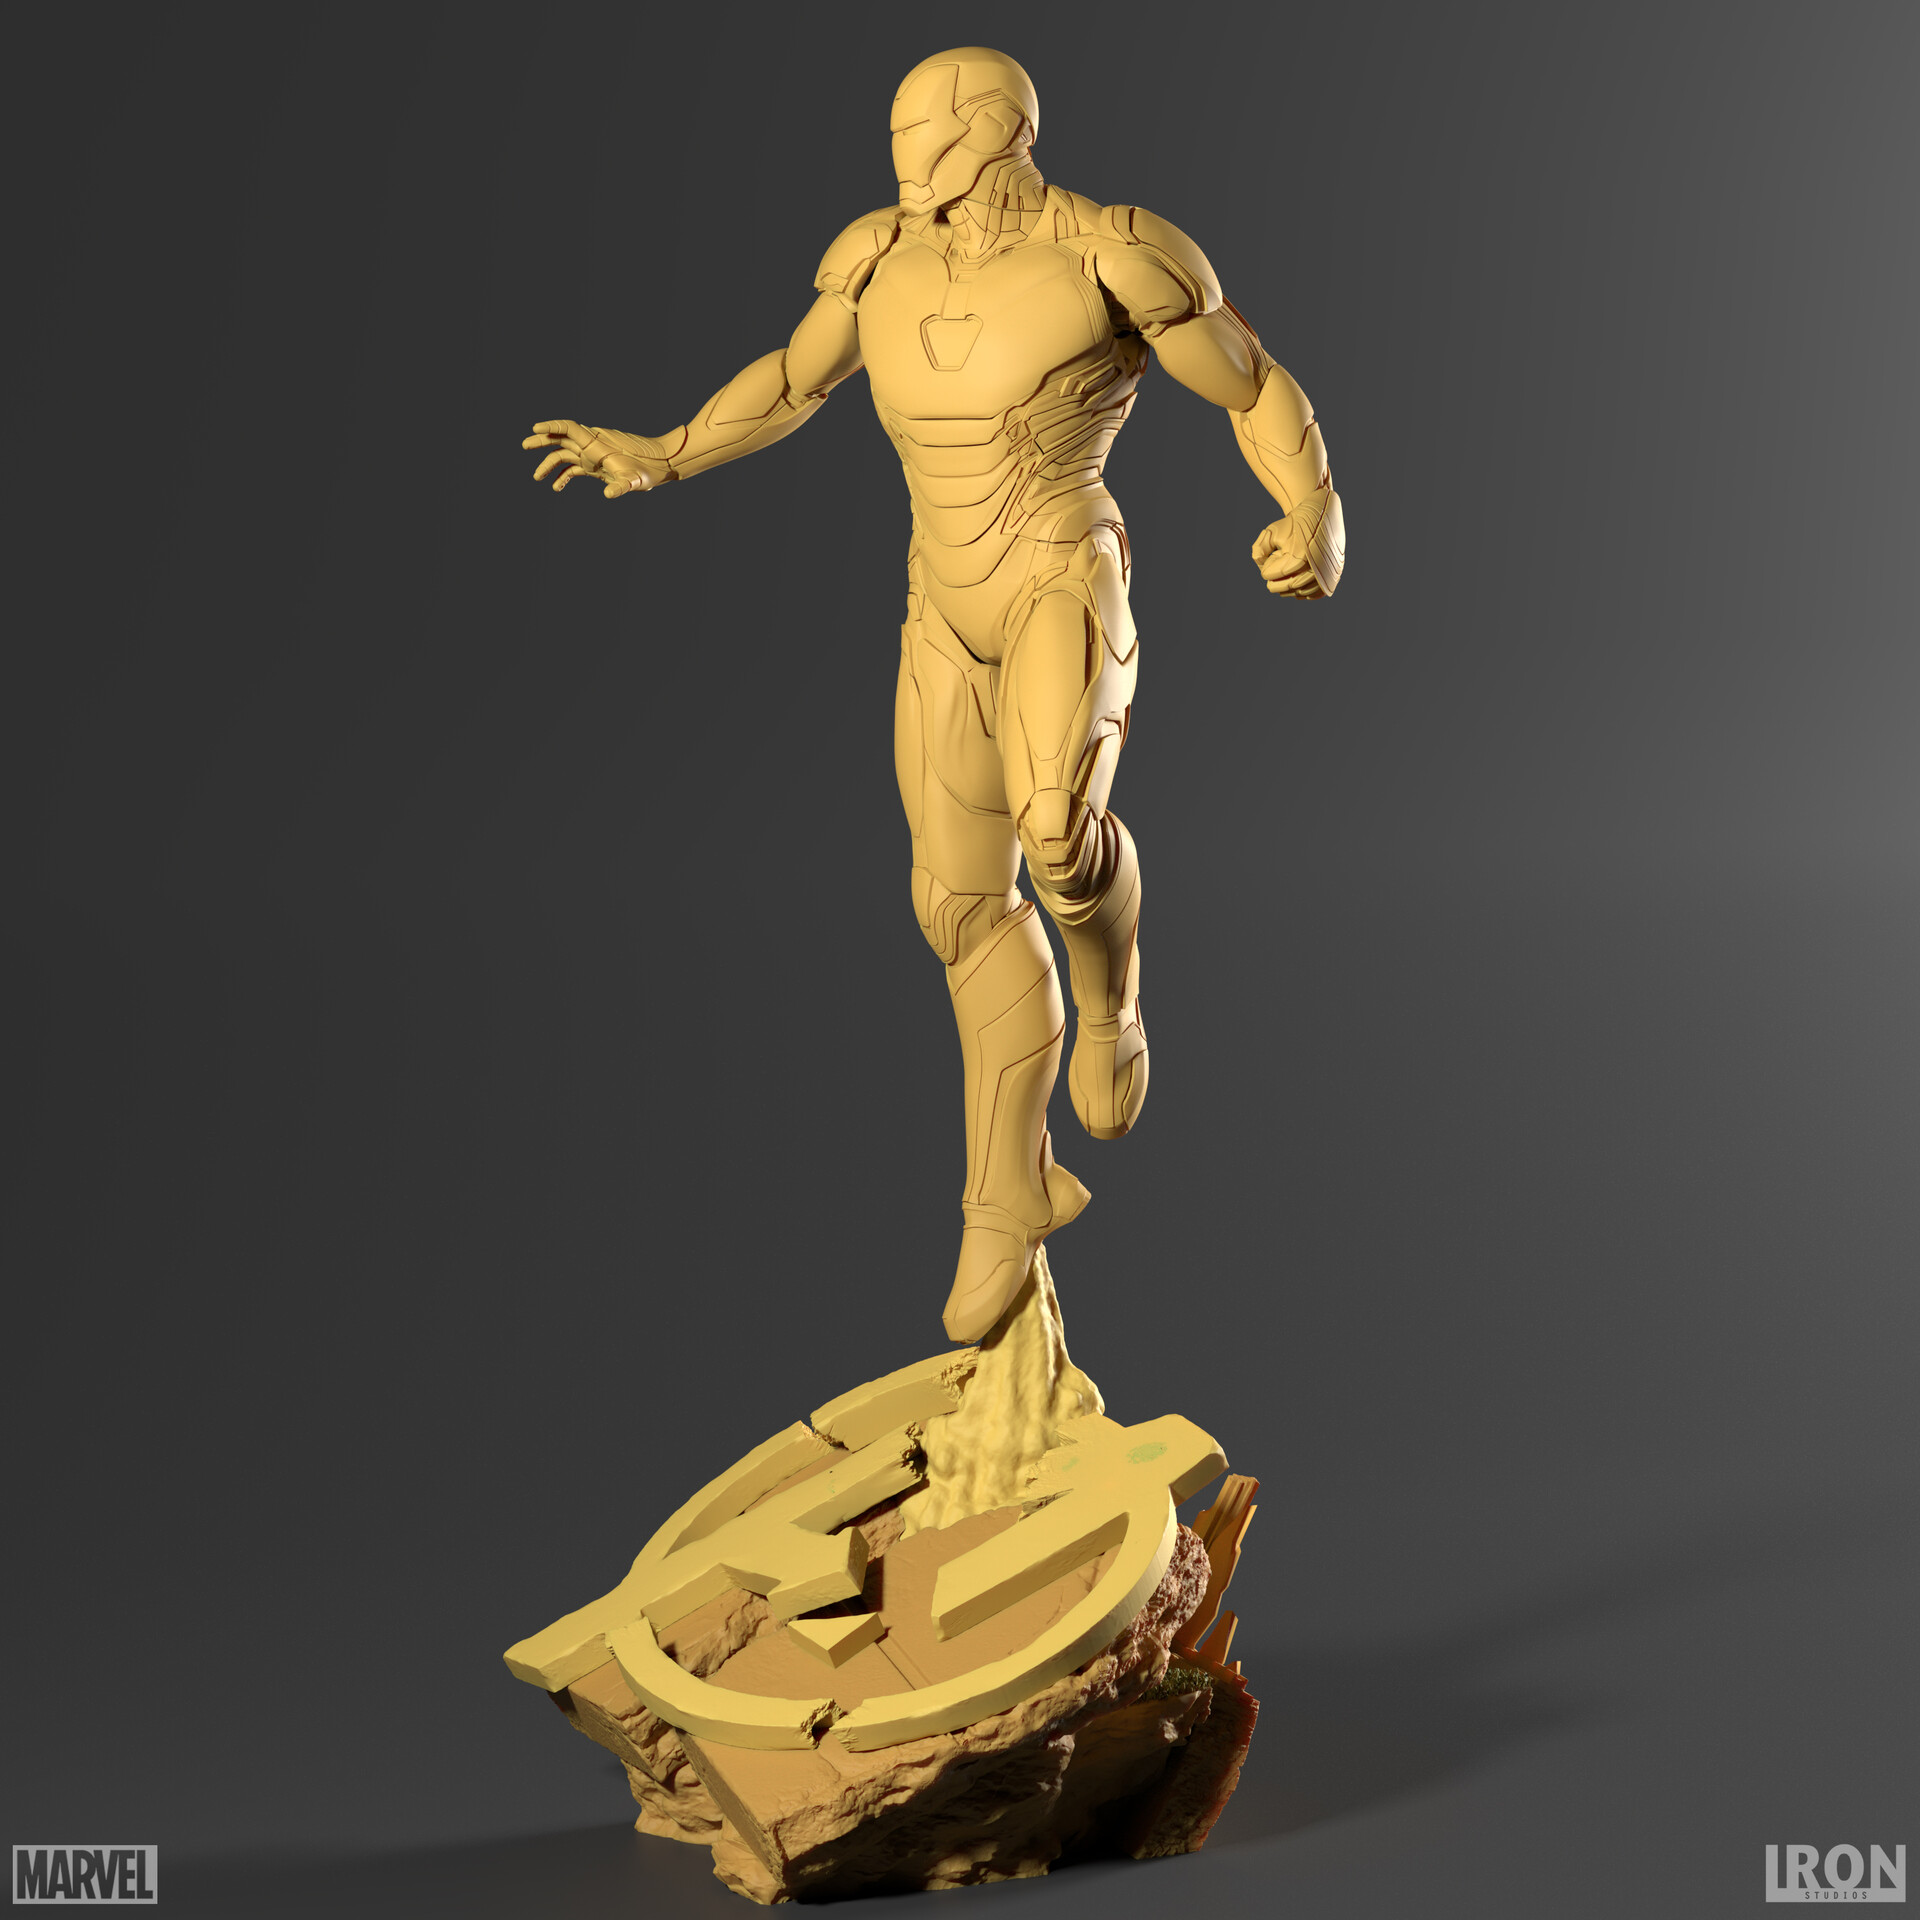 Avengers Endgame Legacy Replica Statue 1/4 Iron Man Mark LXXXV